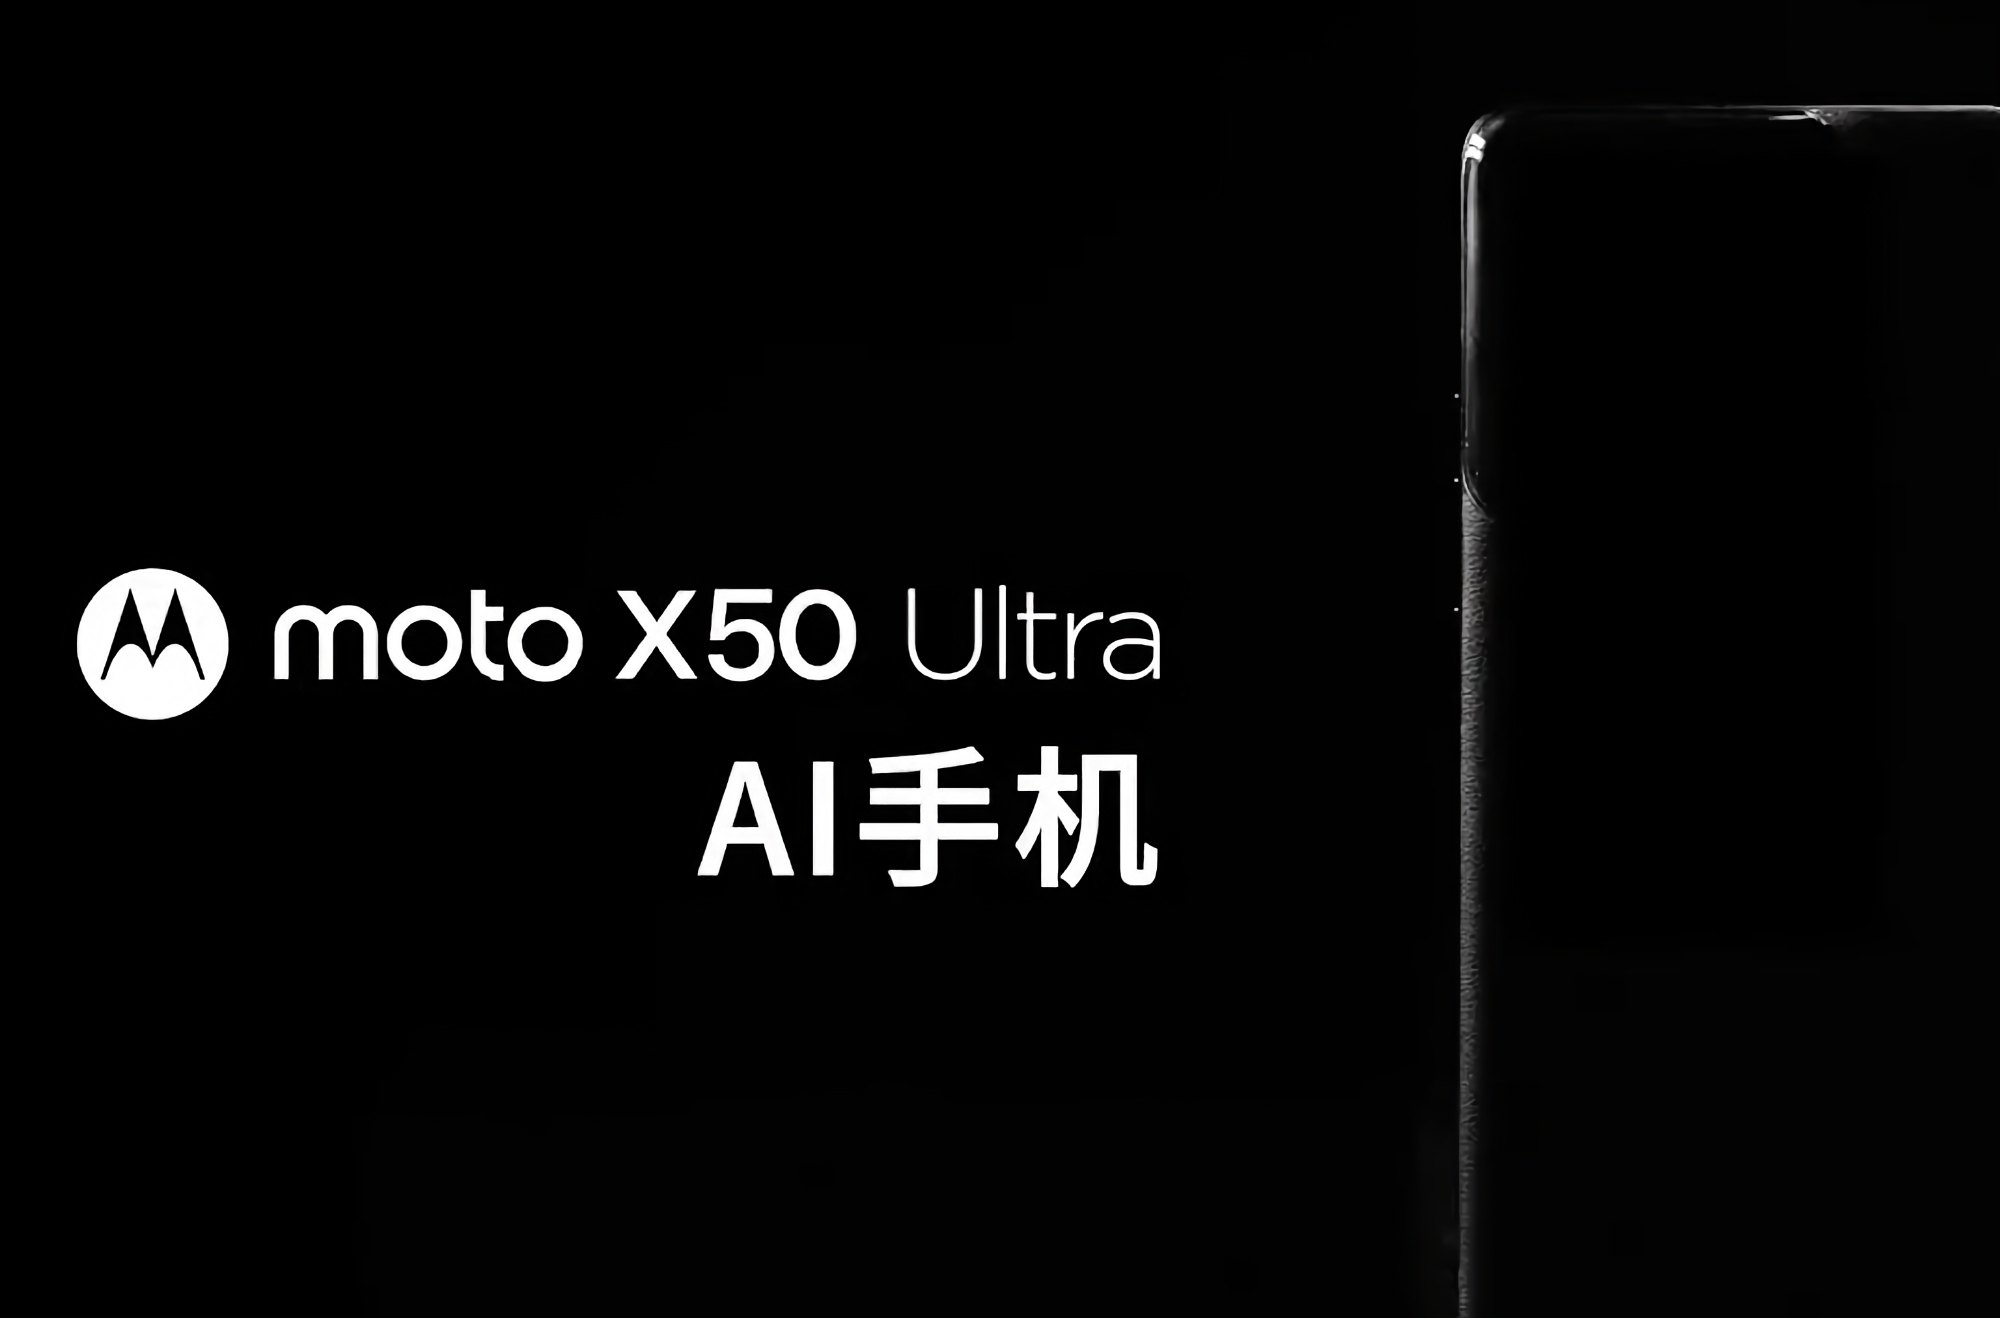 Es ist offiziell: Motorola bereitet sich auf die Veröffentlichung des Moto X50 Ultra Flaggschiff-Smartphones mit KI-Funktionen vor